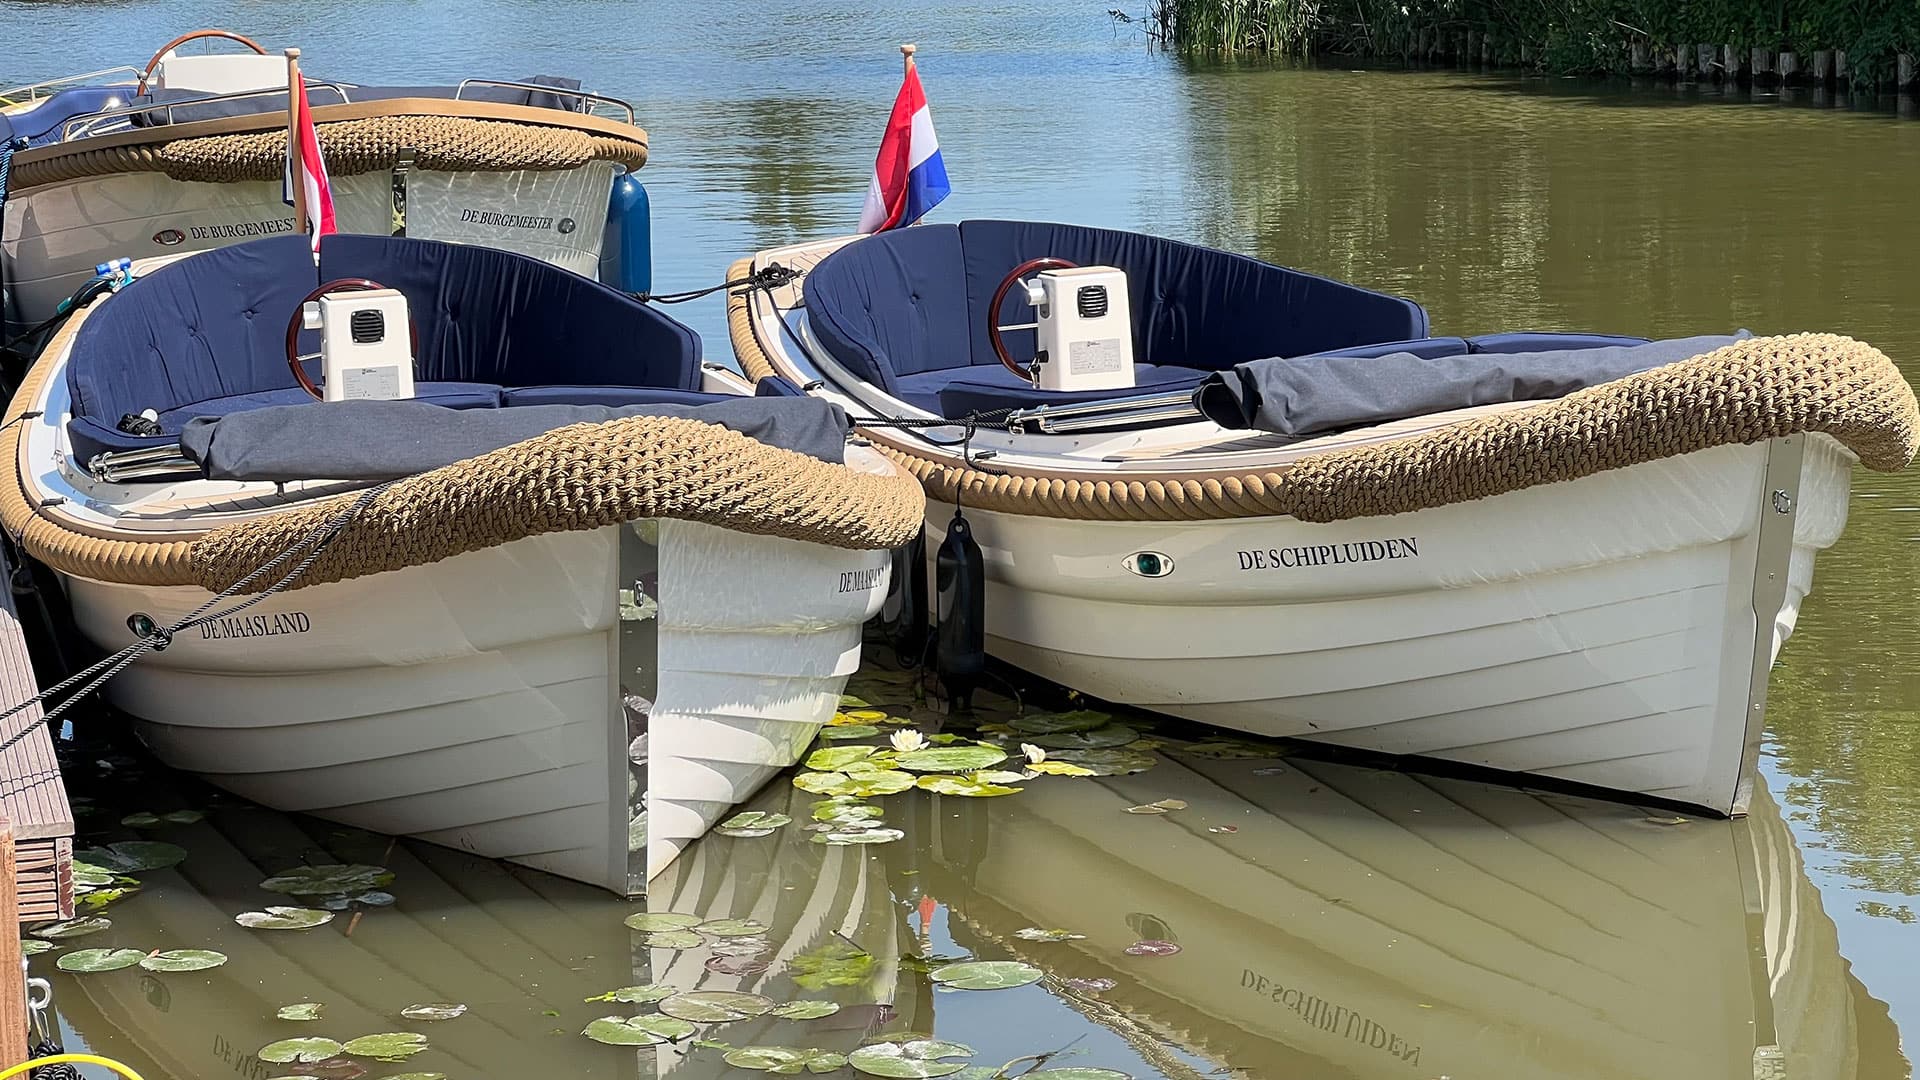 luxe elektrische sloepen van Floriette Experience en 1 motorsloep in het water met witte scheepsromp en blauwe kussens op een zonnige dag in Schipluiden voor een vaartocht naar het Westland